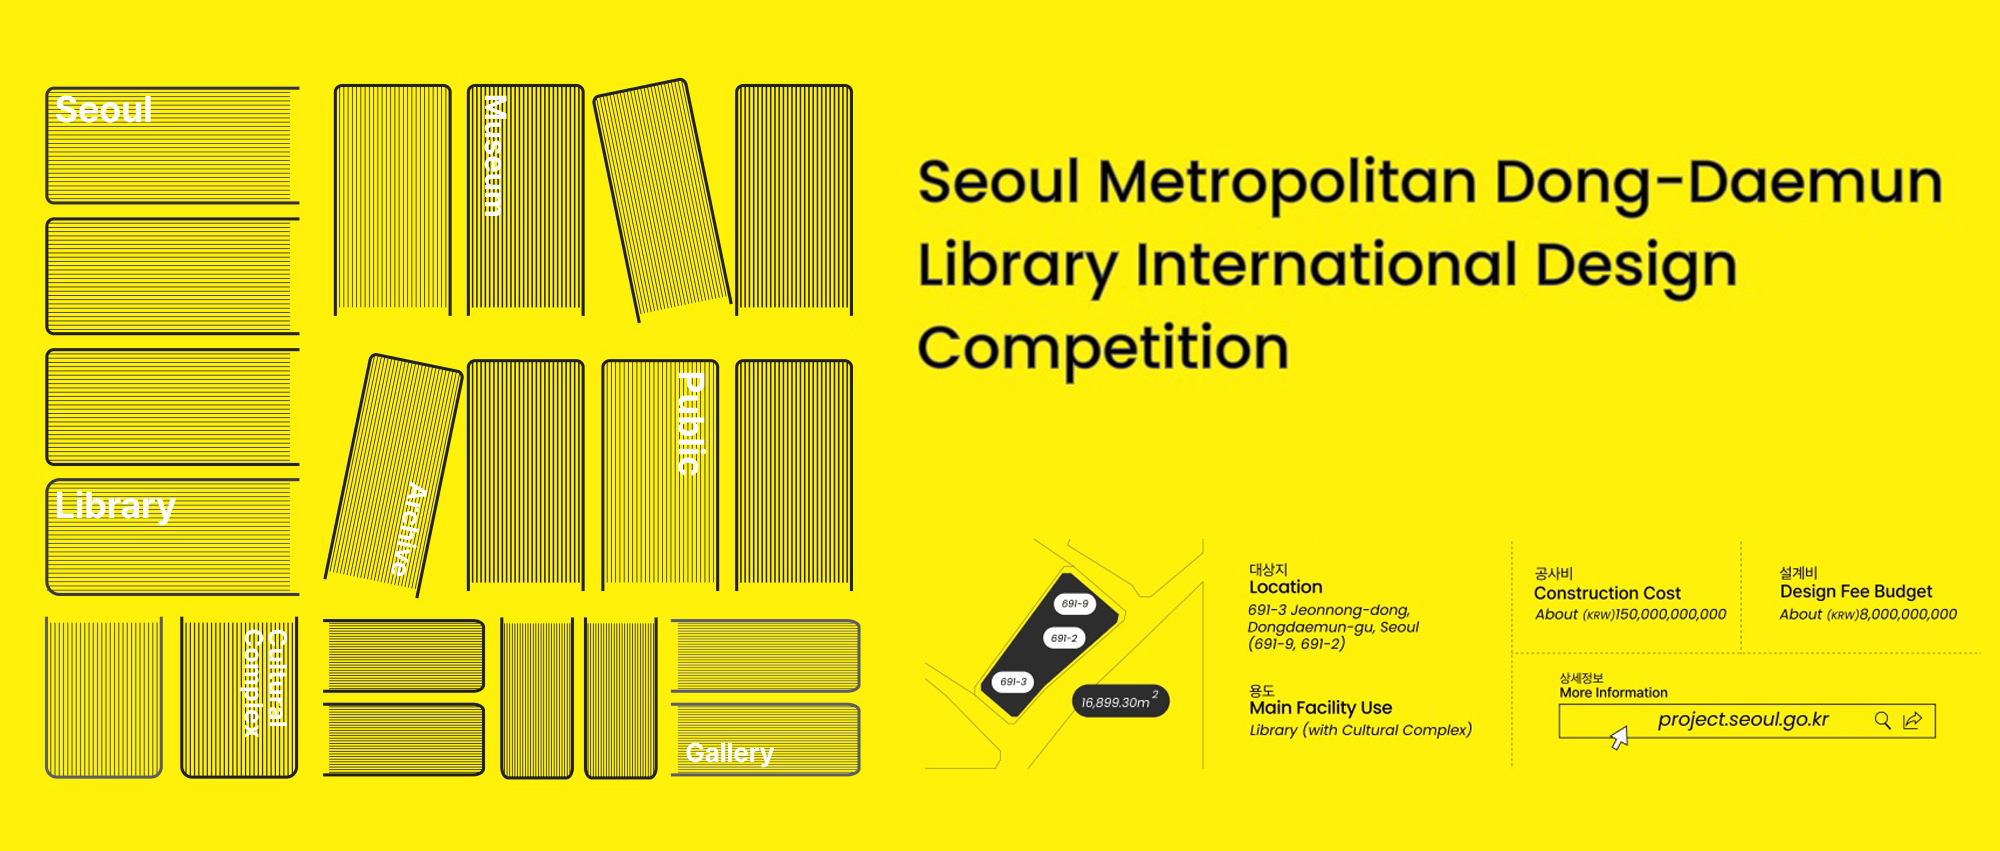 首尔大都会东大门图书馆设计竞赛（预公告）